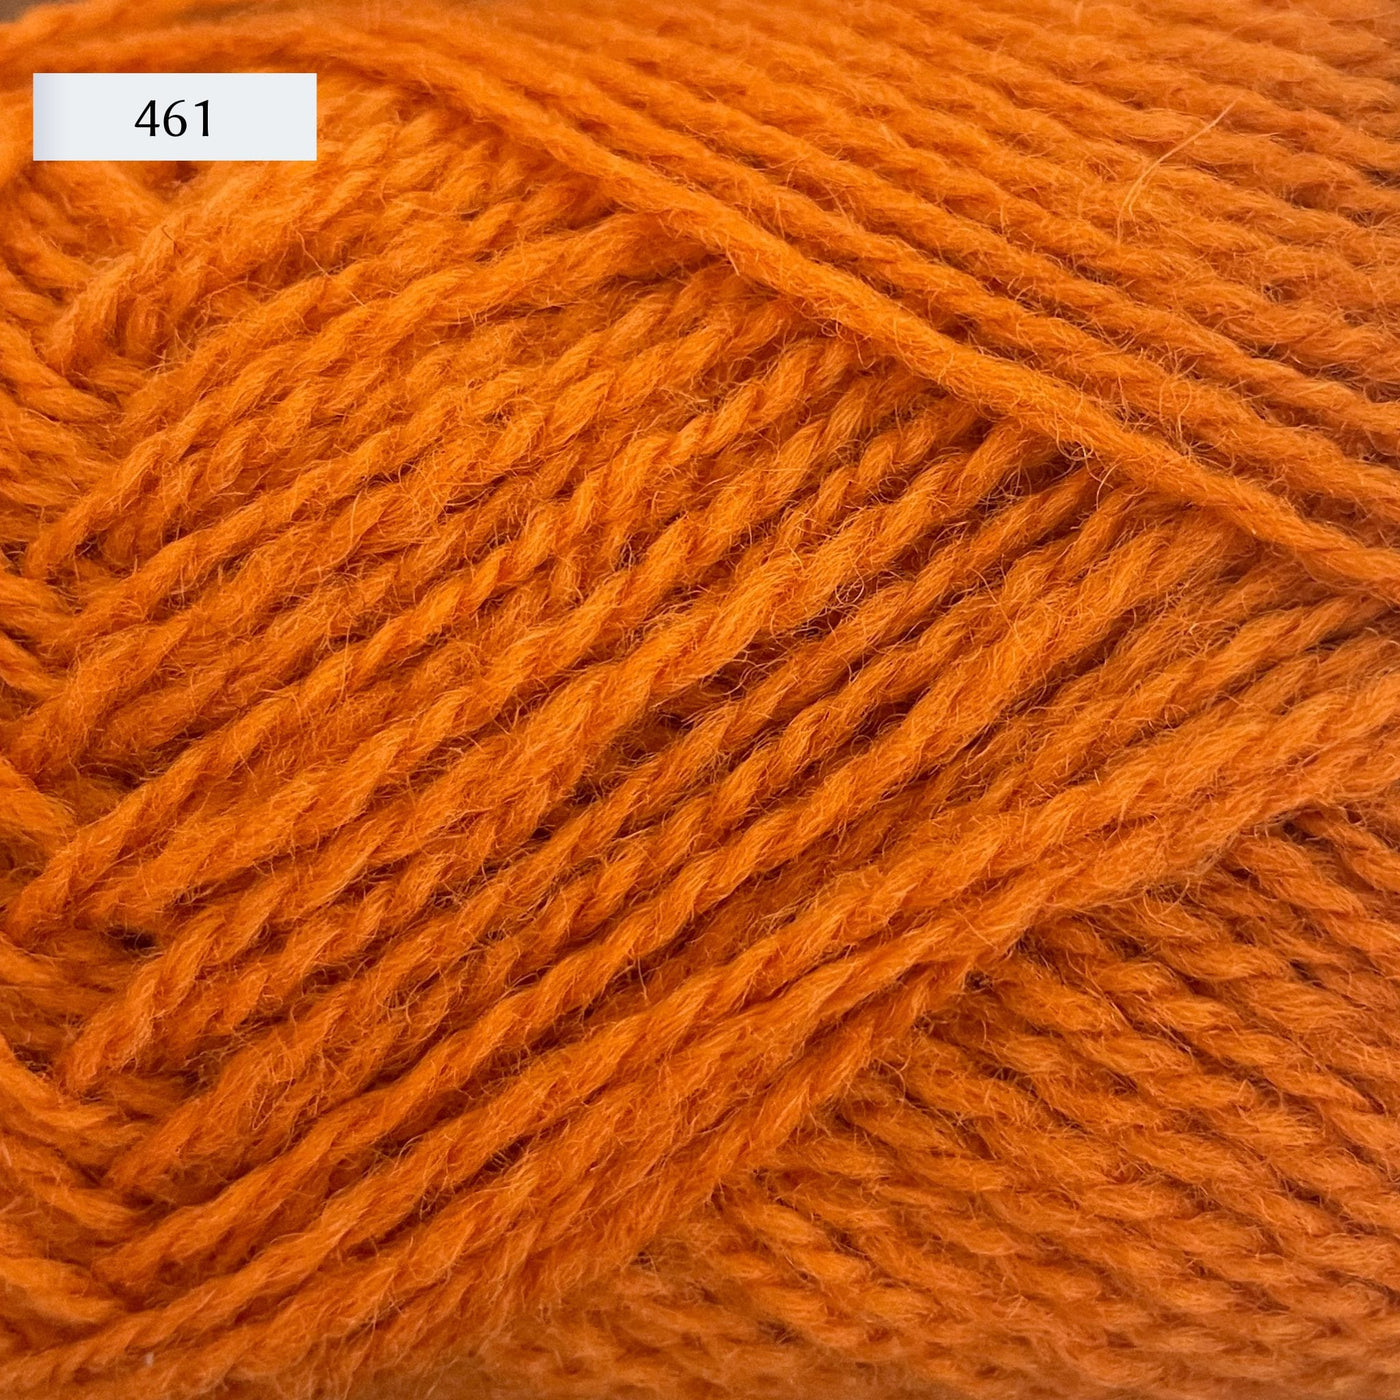 Rauma Finullgarn, a fingering/sport weight yarn, in color 461, a bright orange